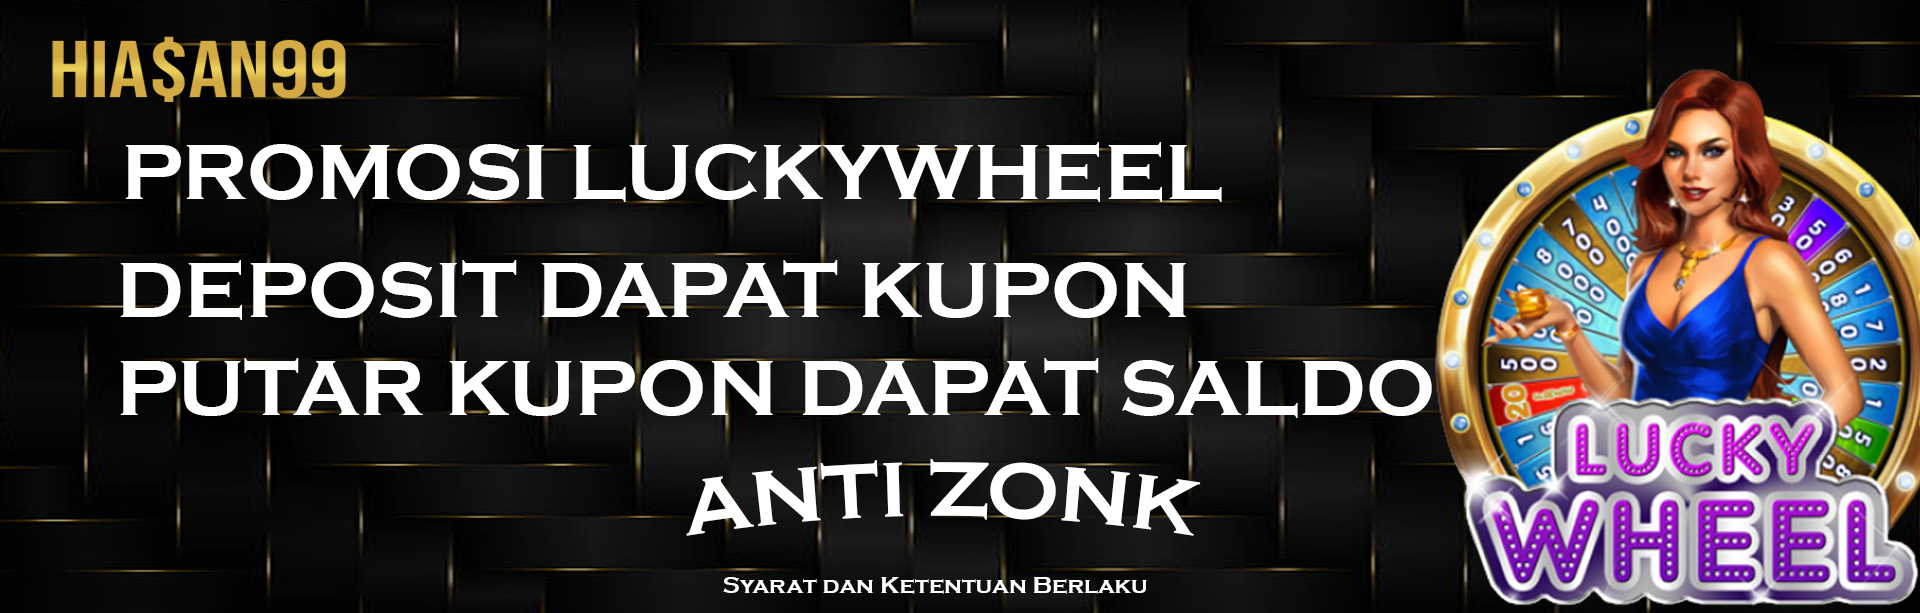 Promo Lucky Wheel